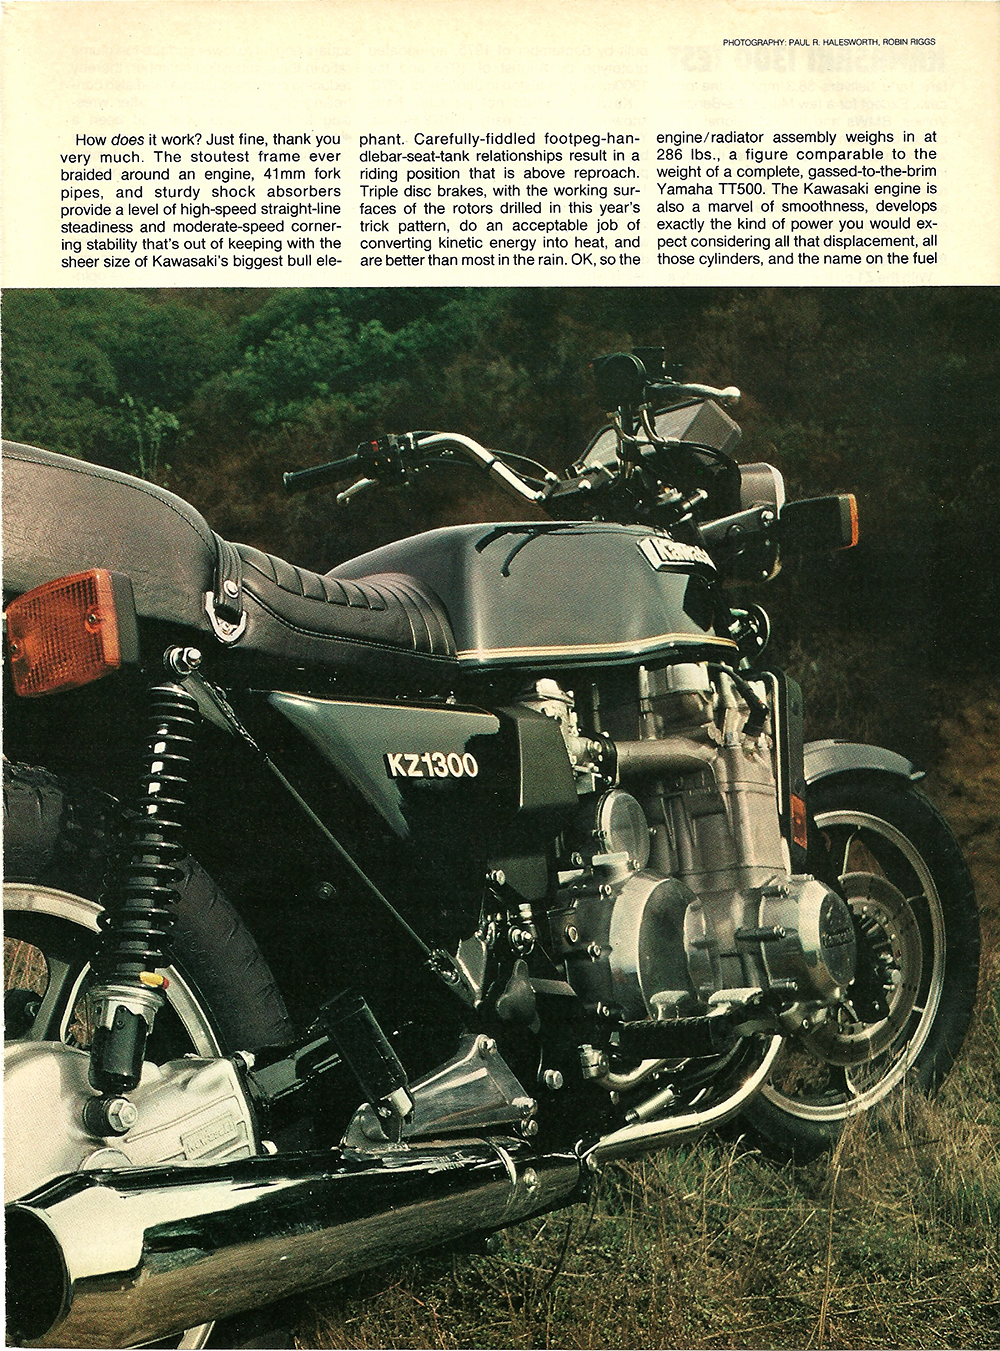 døråbning Som sammensmeltning 1979 Kawasaki KZ1300 road test — Ye Olde Cycle Shoppe